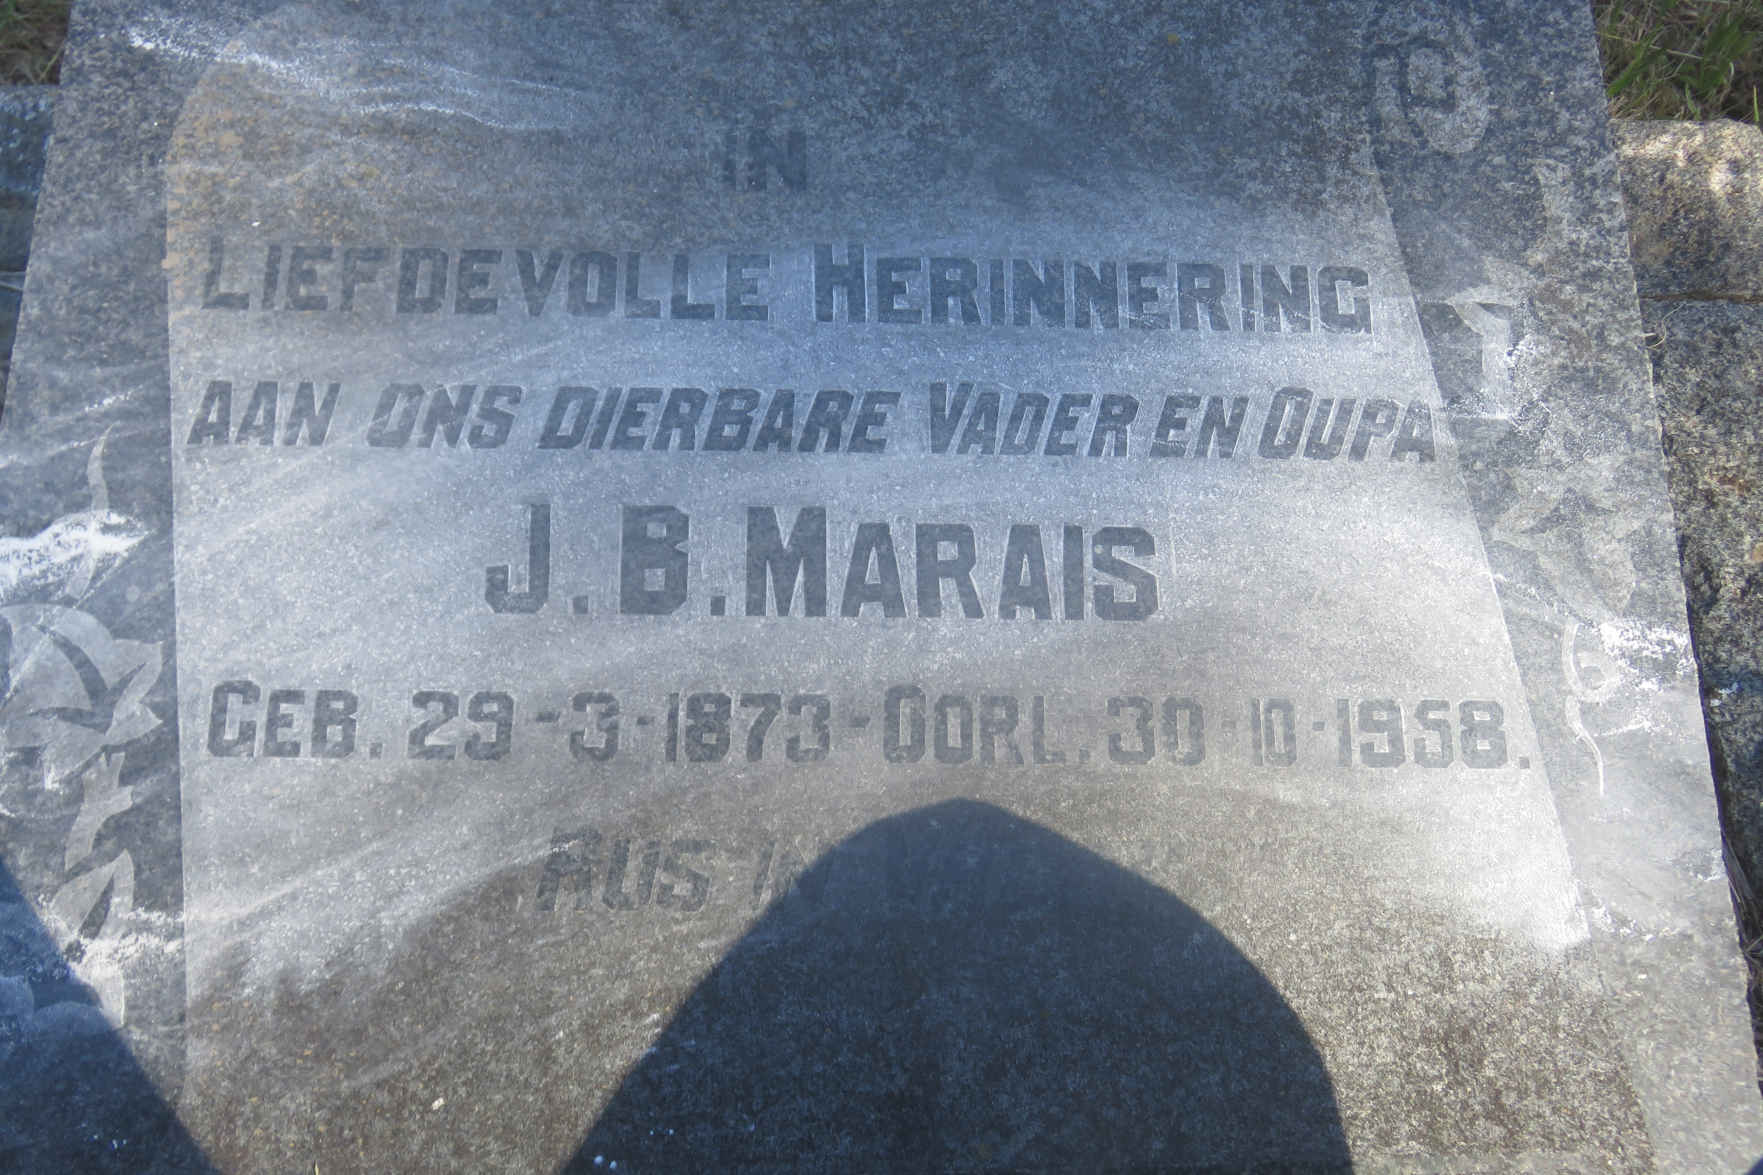 MARAIS J.B. 1873-1958